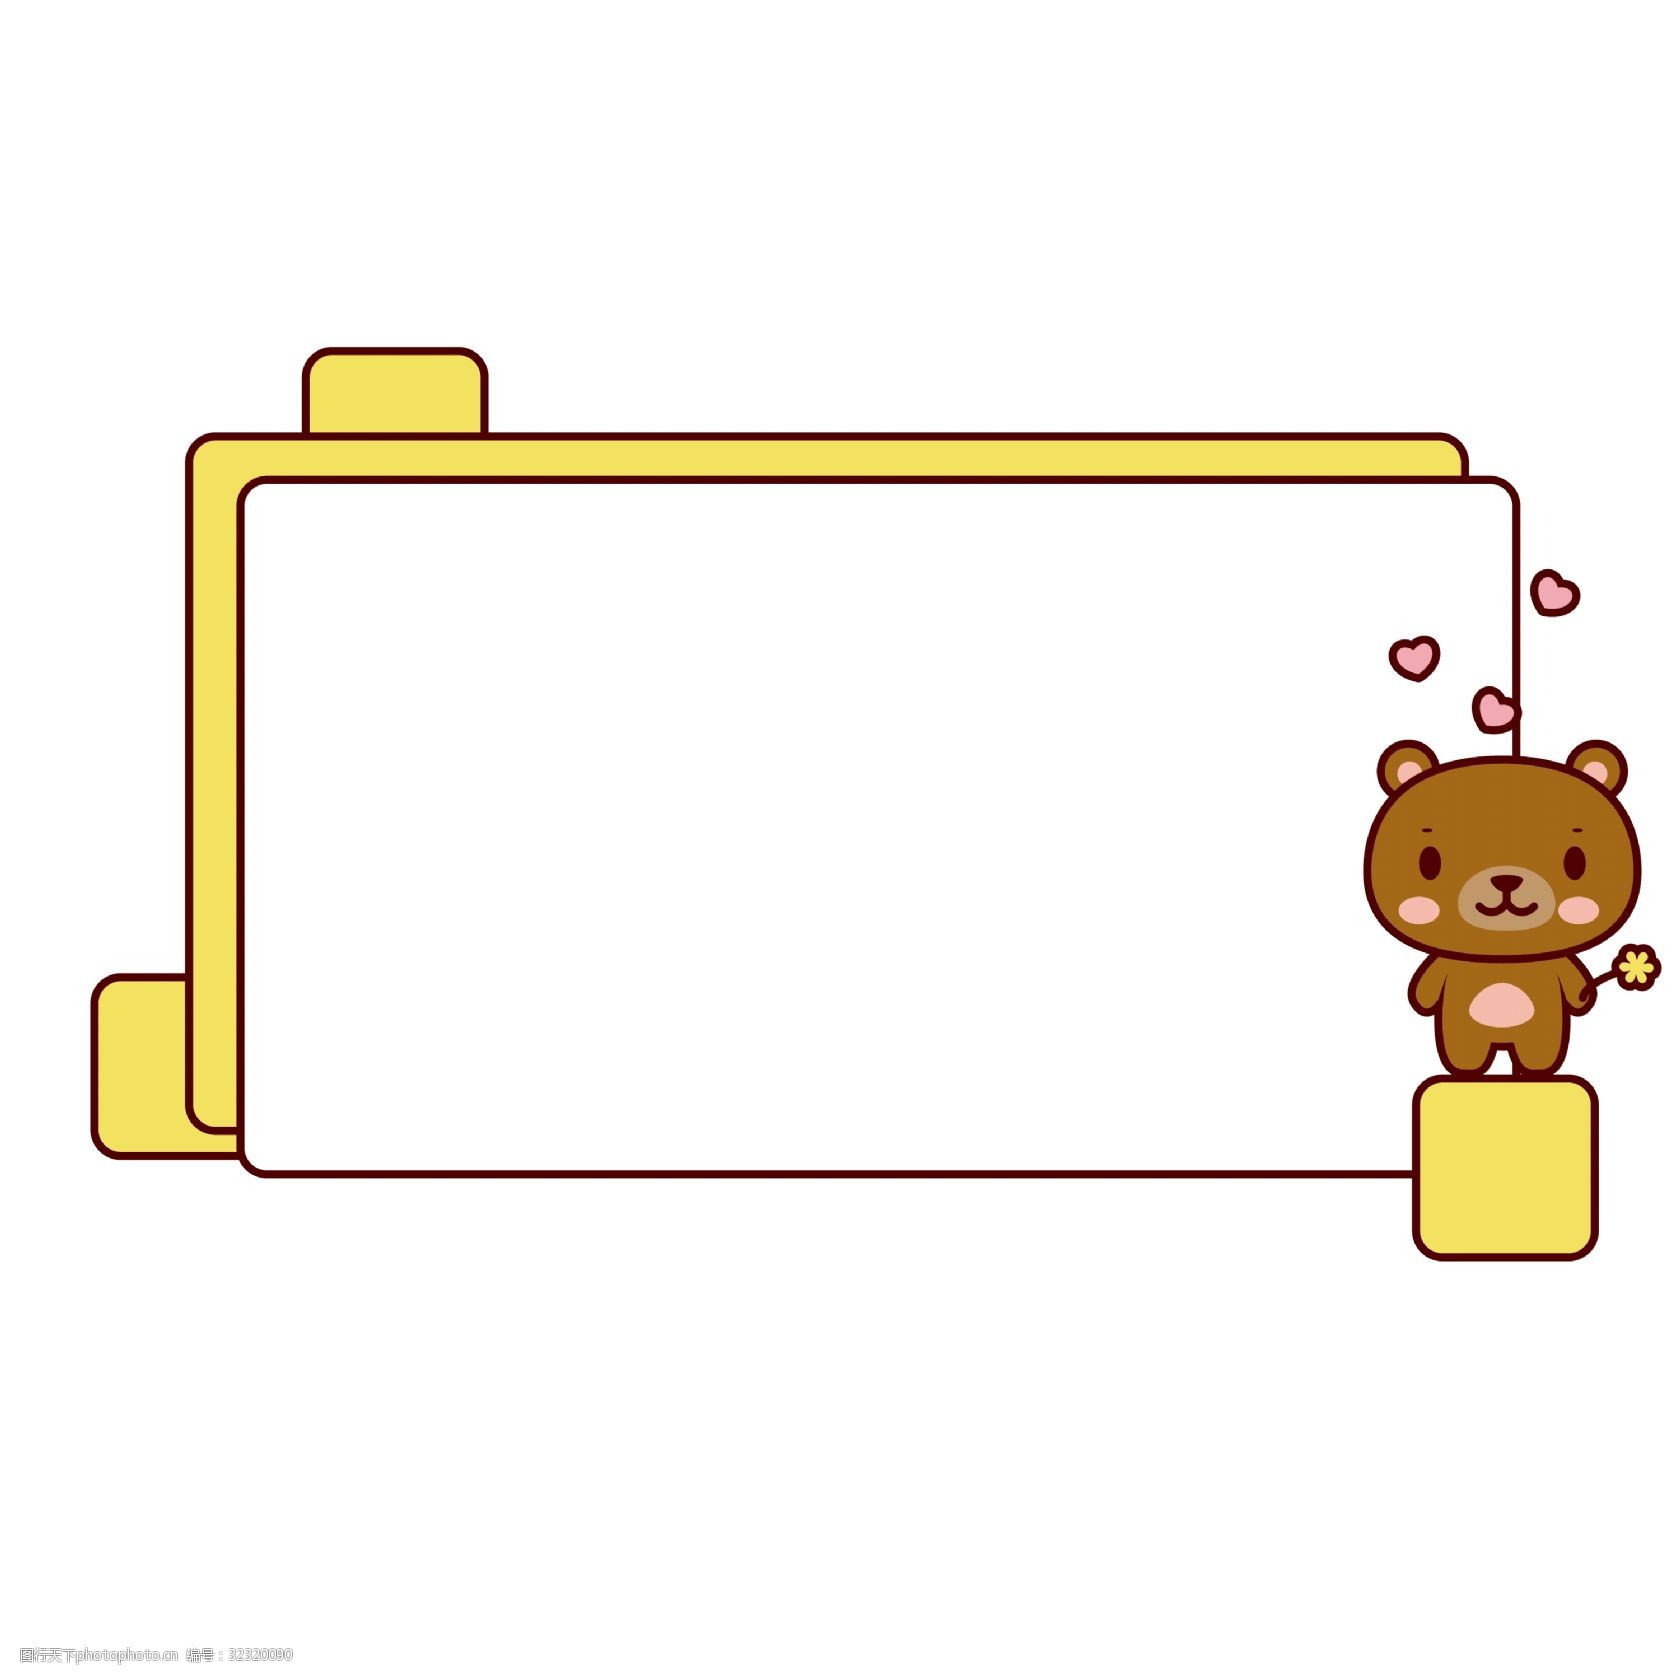 关键词:元旦可爱小熊边框 漂亮的边框 卡通边框 手绘小熊边框 可爱的